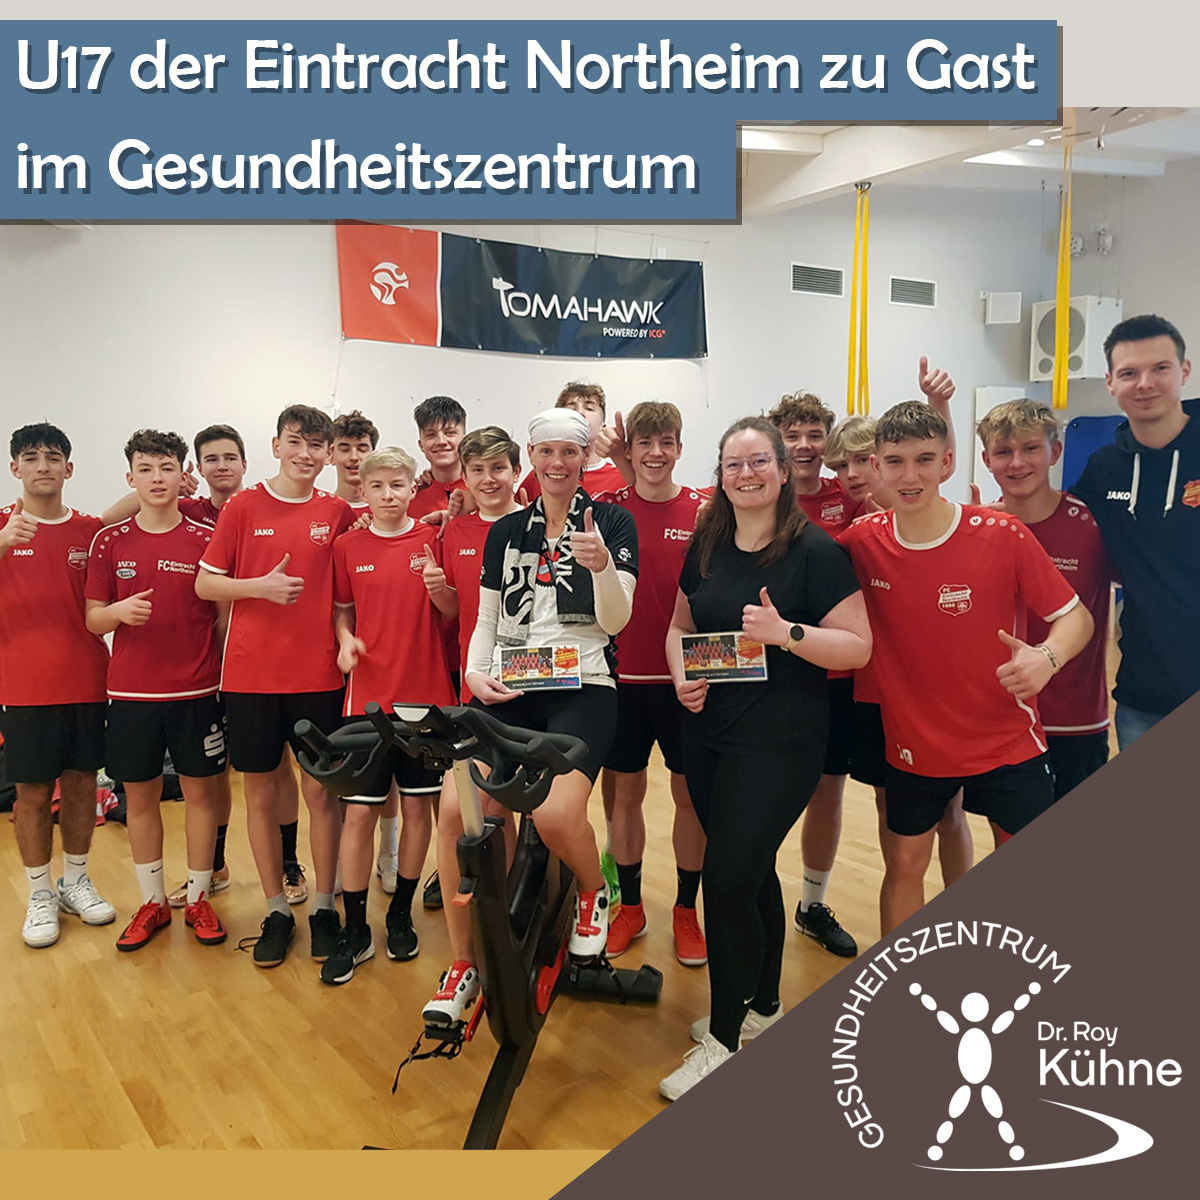 U17 Eintracht Northeim Gast Gesundheitszentrum Dr. Roy Kühne